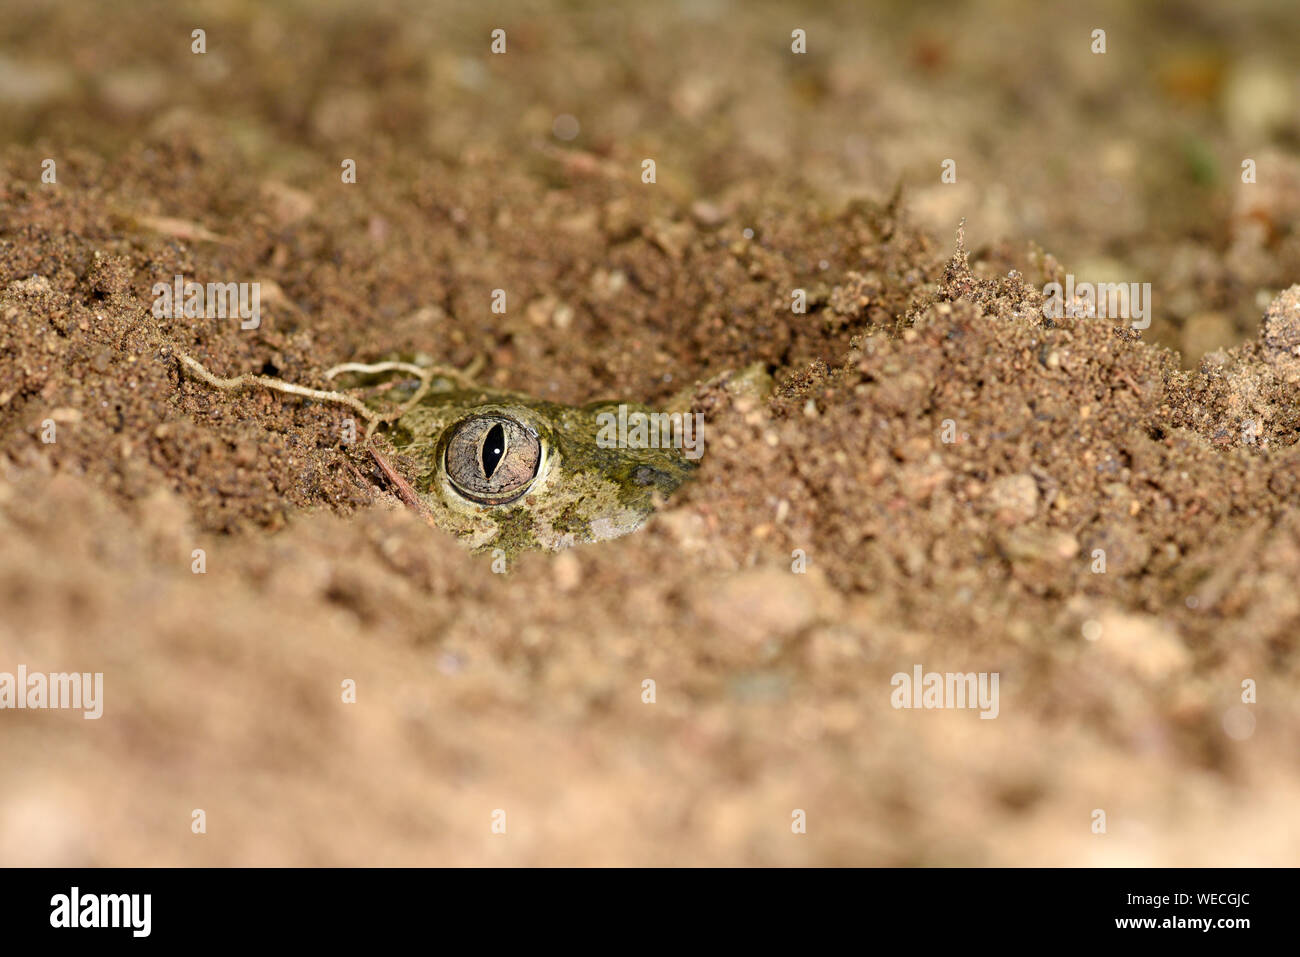 Europäischen Knoblauchkröte (Pelobates fuscus) versteckt sich im sandigen Boden mit nur Kopf und Auge sichtbar, Bulgarien, April Stockfoto